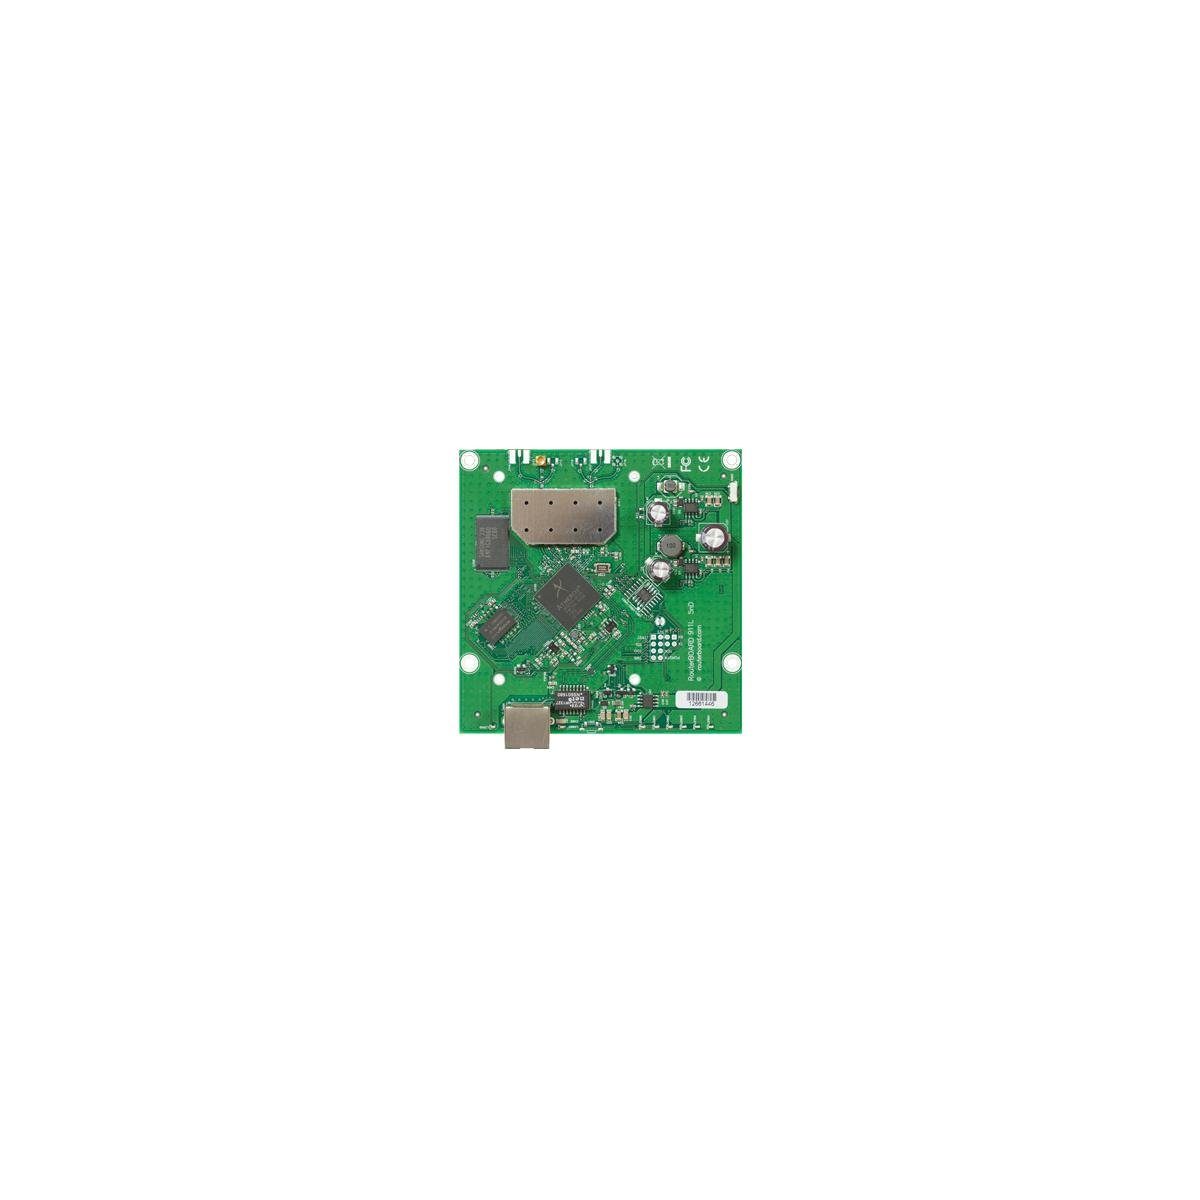 MikroTik RB911-5HN - RouterBOARD, 64 MB DDR2, 5 GHz, 23 dBm Netzwerk-Switch